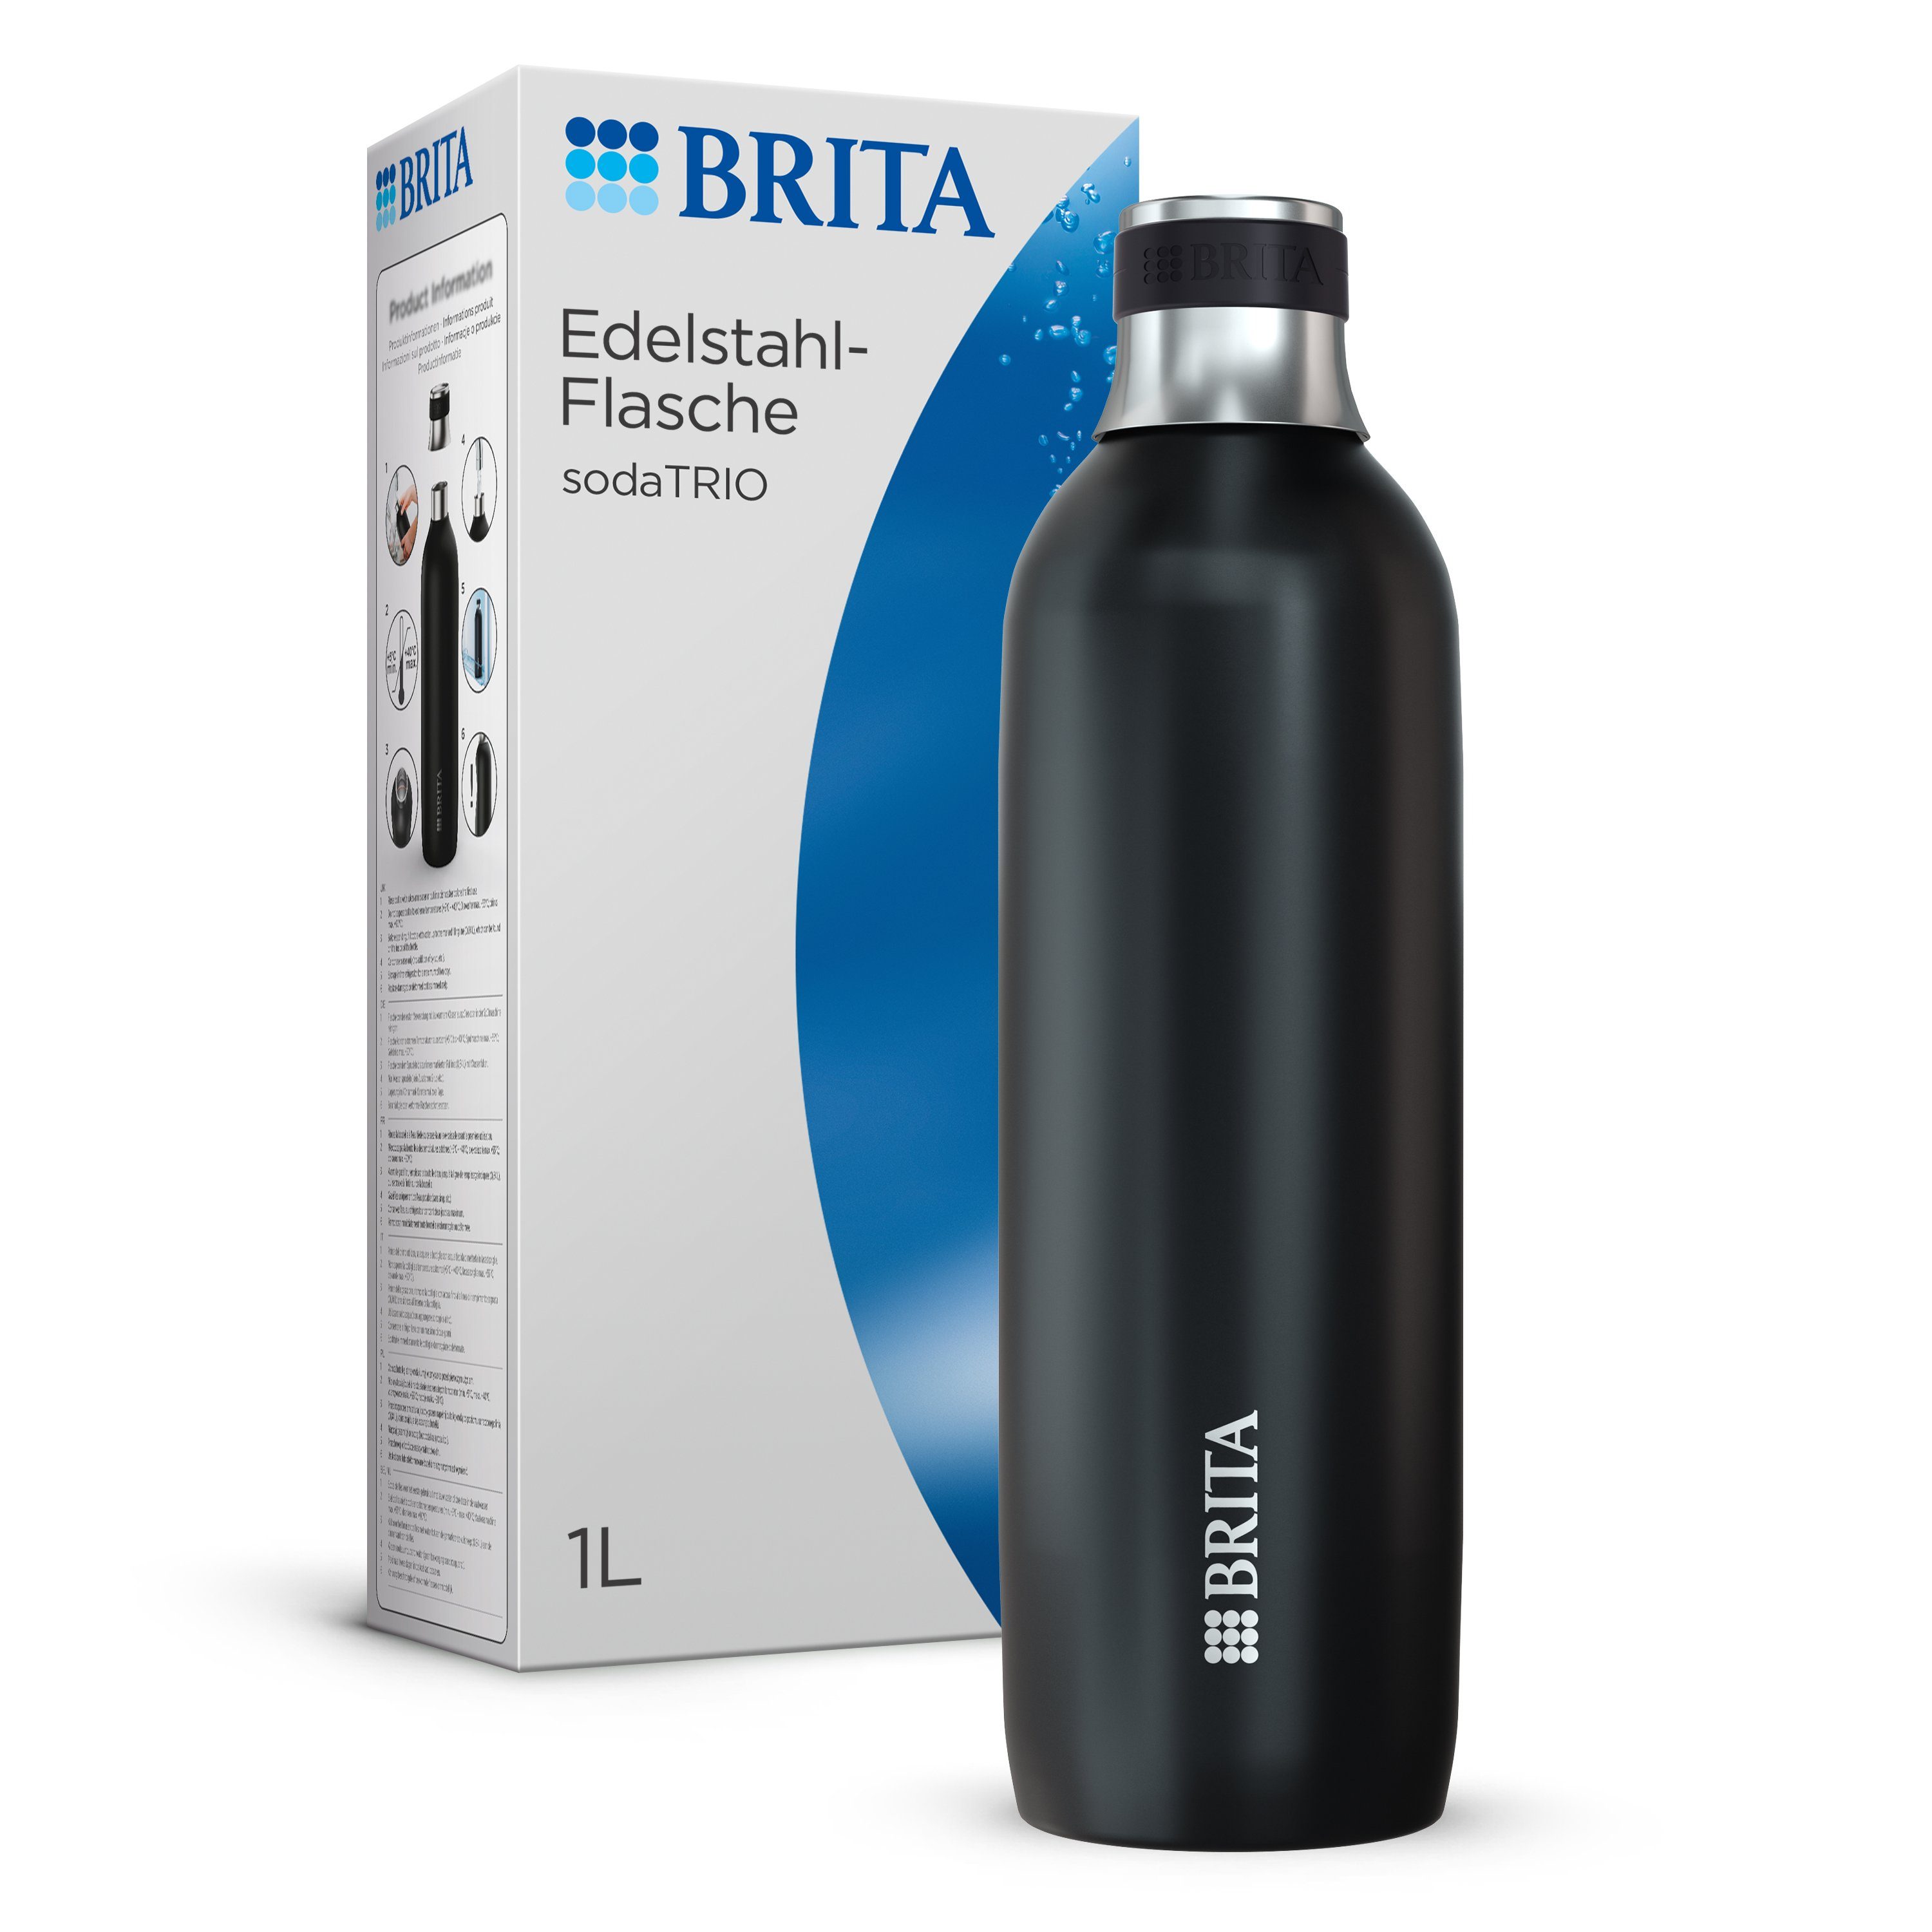 & BRITA Flasche doppelwandige isolierte 1l Wassersprudler Flasche, Edelstahl sodaTRIO, Premium